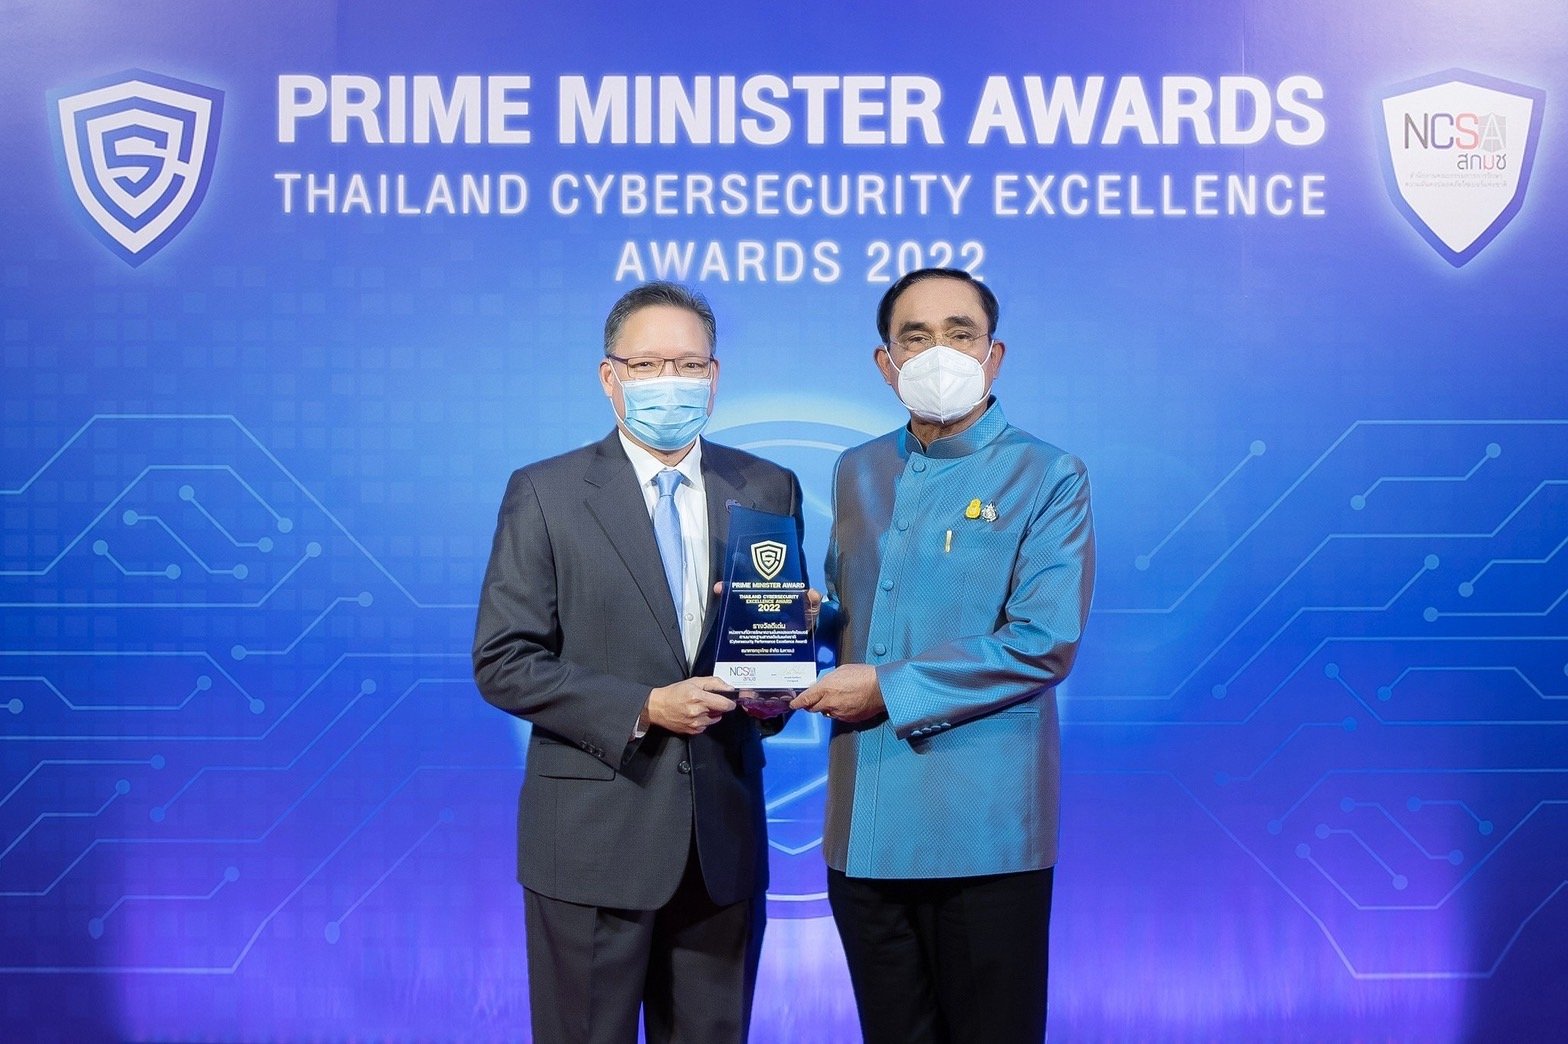  กรุงไทย คว้า 3 รางวัลดีเด่น ตอกย้ำองค์กรที่มีมาตรฐานความปลอดภัยทางไซเบอร์ระดับสากล